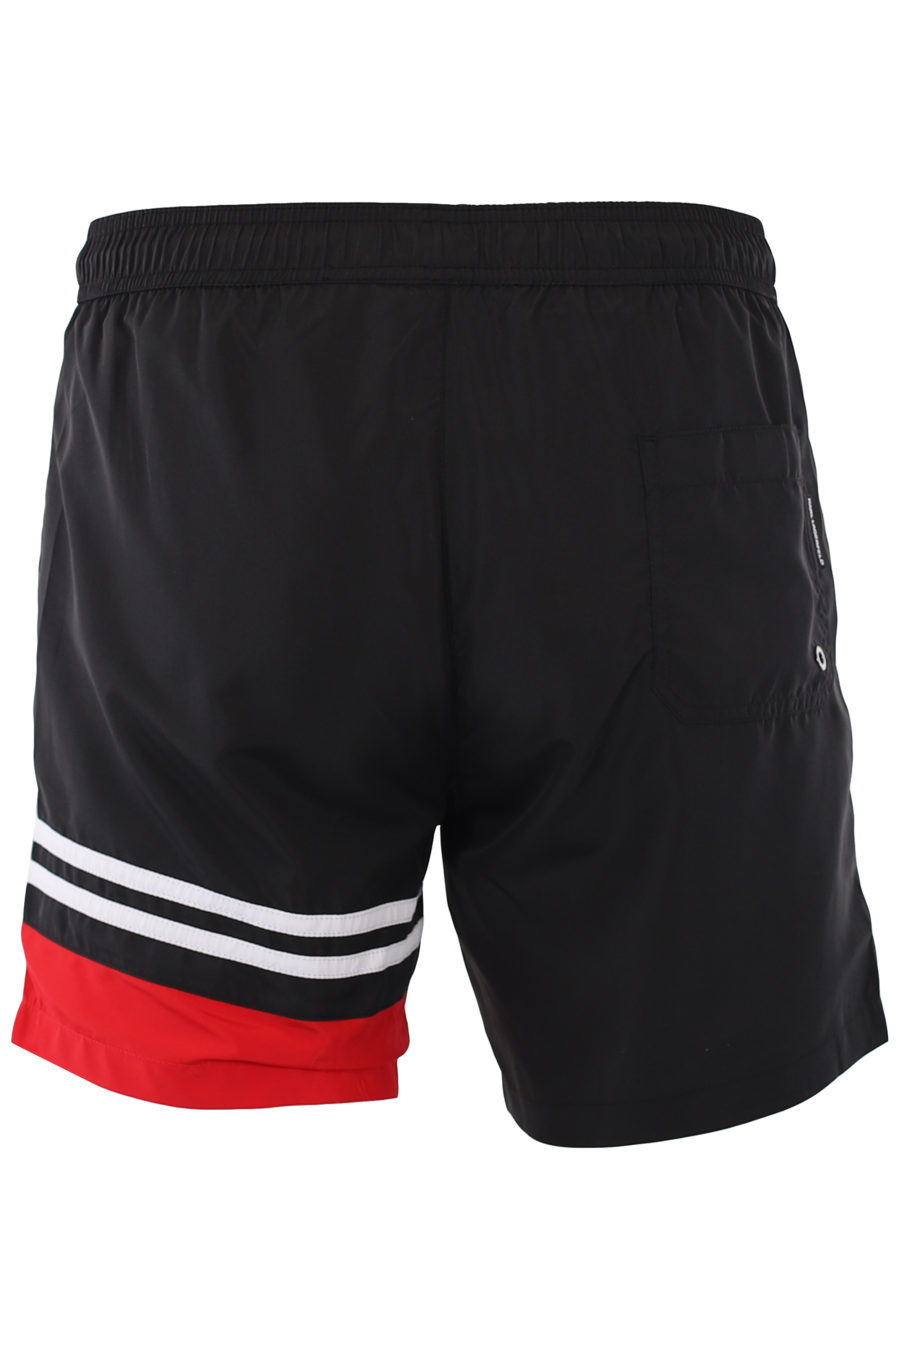 Bañador negro con bolsillos y detalles rojos - IMG 9261